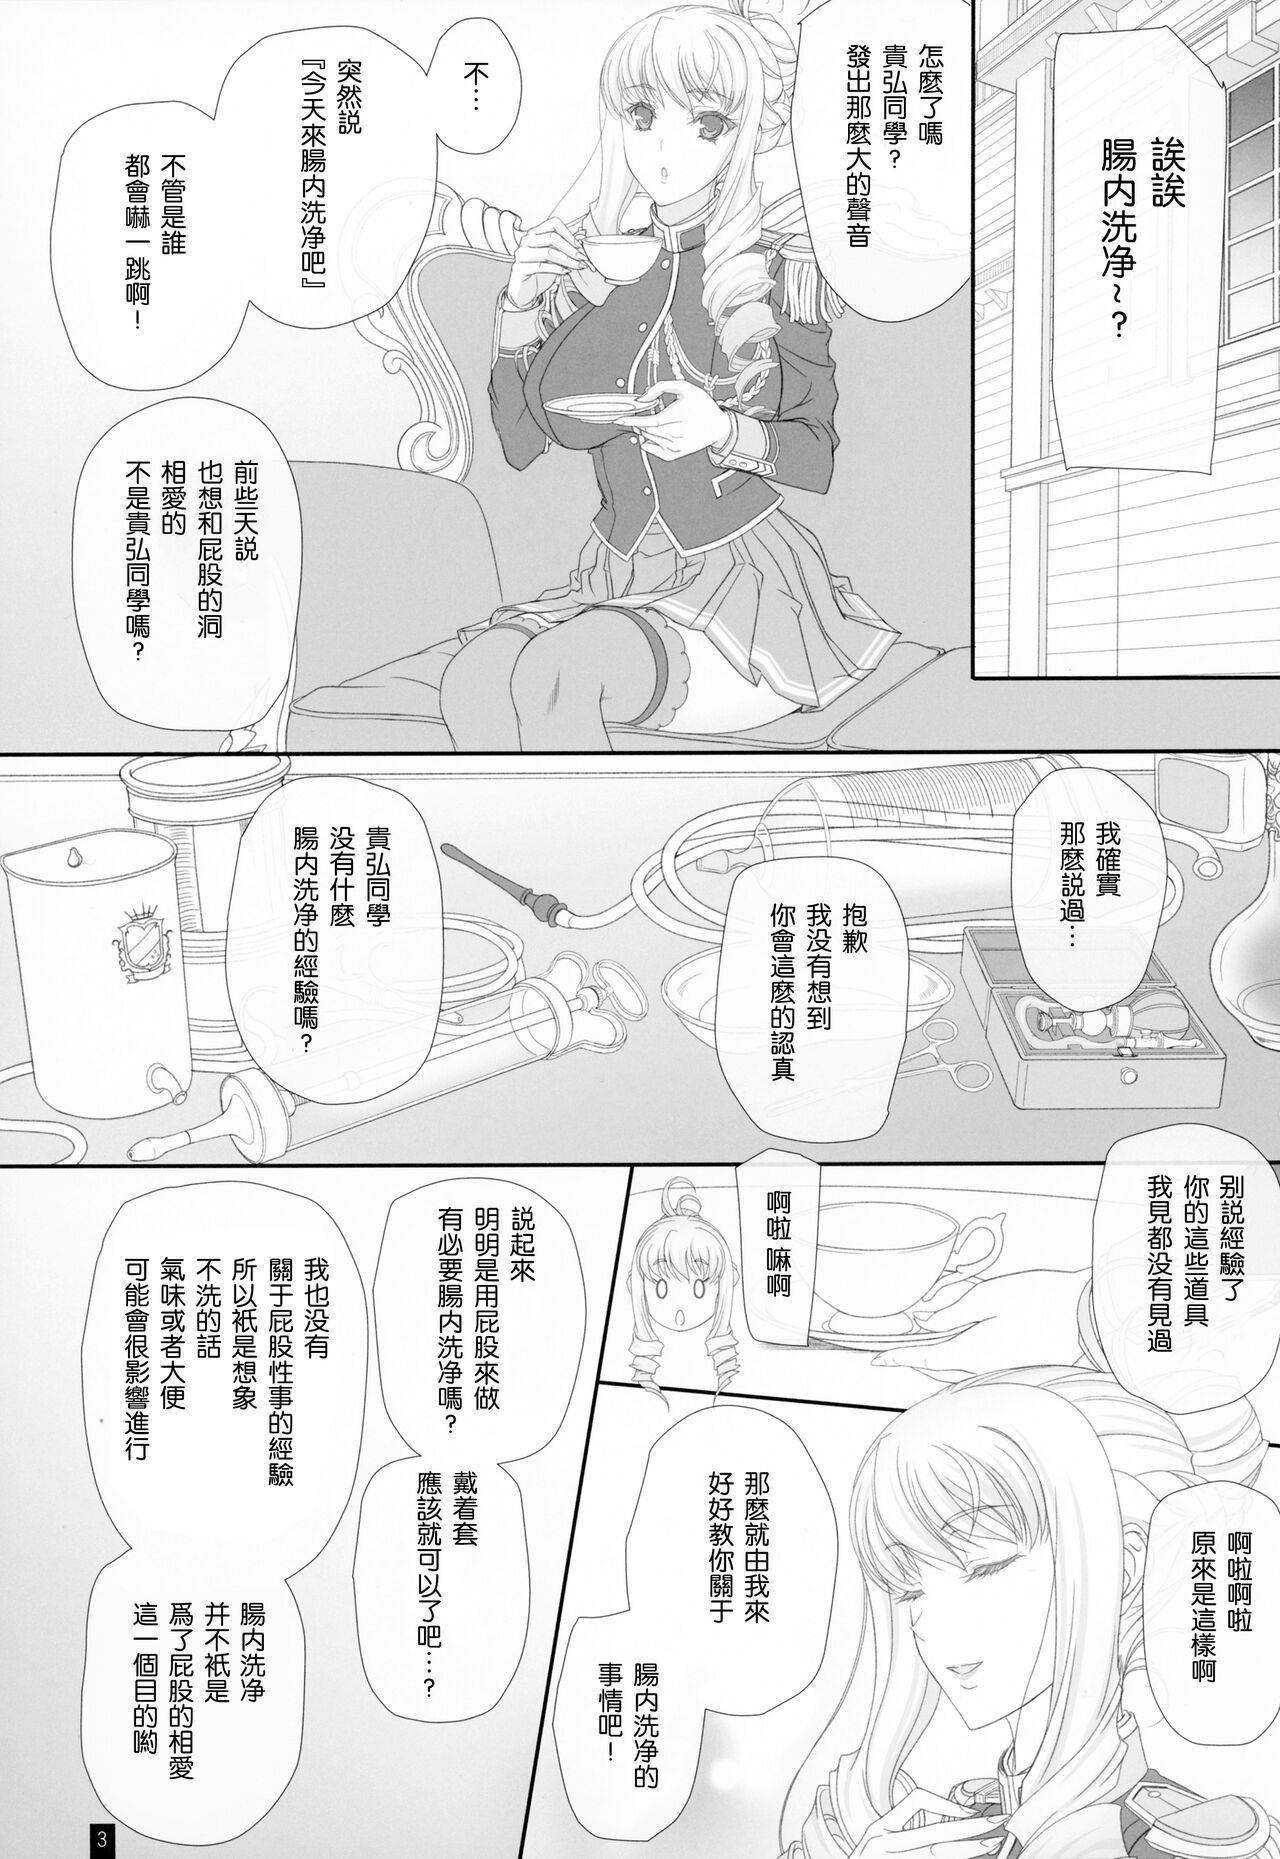 Escort Bertille San Oshiri De Ecchi♡ Dekiru Kana? - Walkure romanze Pounding - Page 2